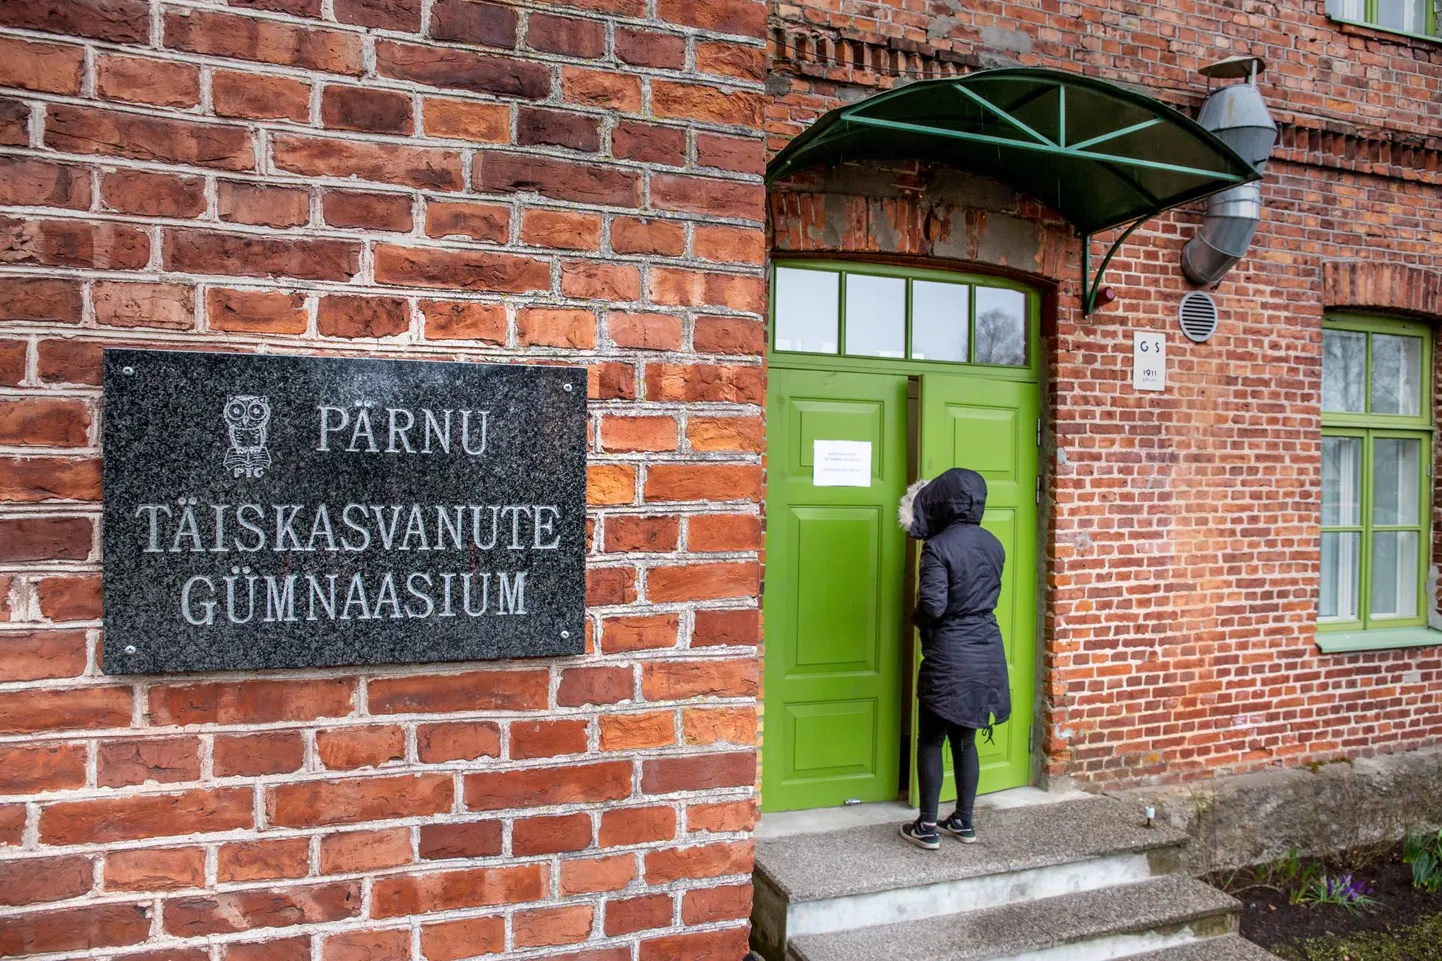 Eile allkirjastasid Pärnu linnapea ning haridus- ja teadusministeeriumi asekantsler koostööprotokolli, millega seati siht Pärnu täiskasvanute gümnaasiumi tegevus lõpetada.